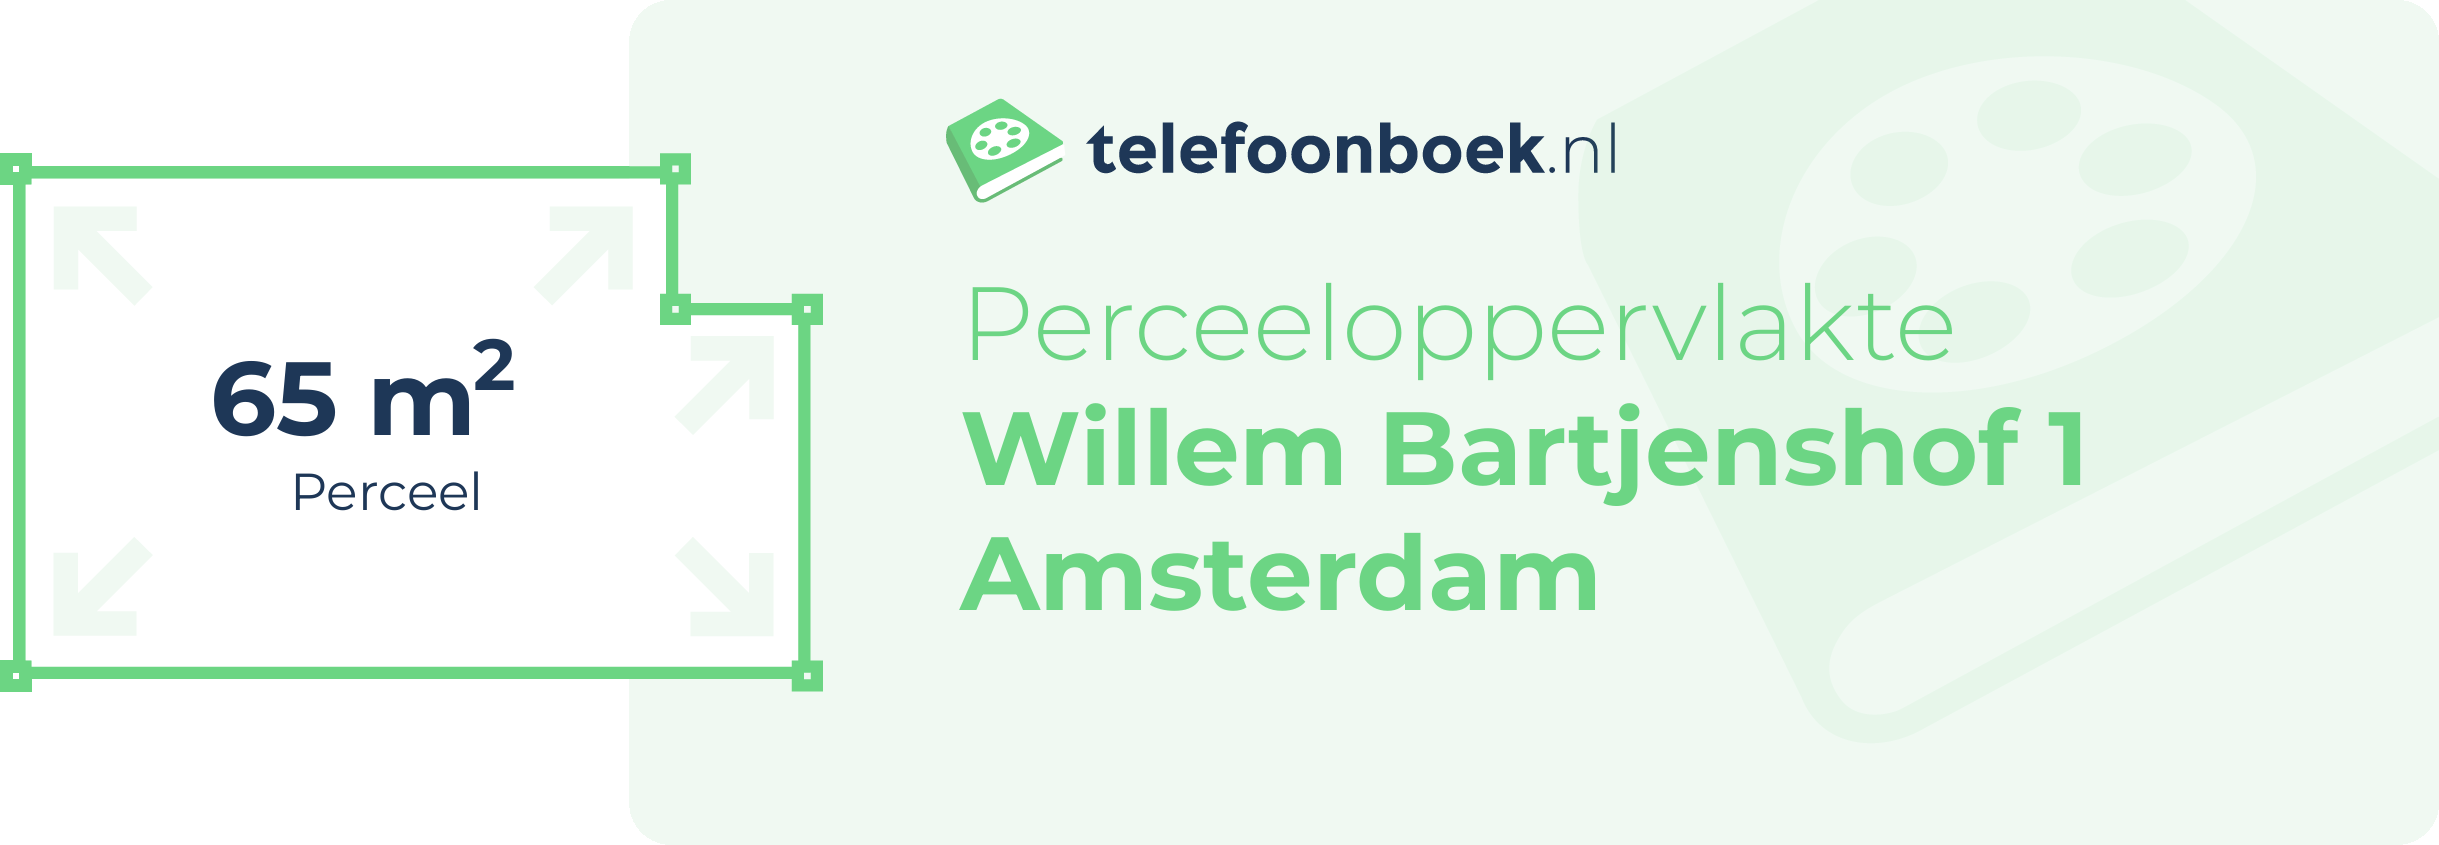 Perceeloppervlakte Willem Bartjenshof 1 Amsterdam